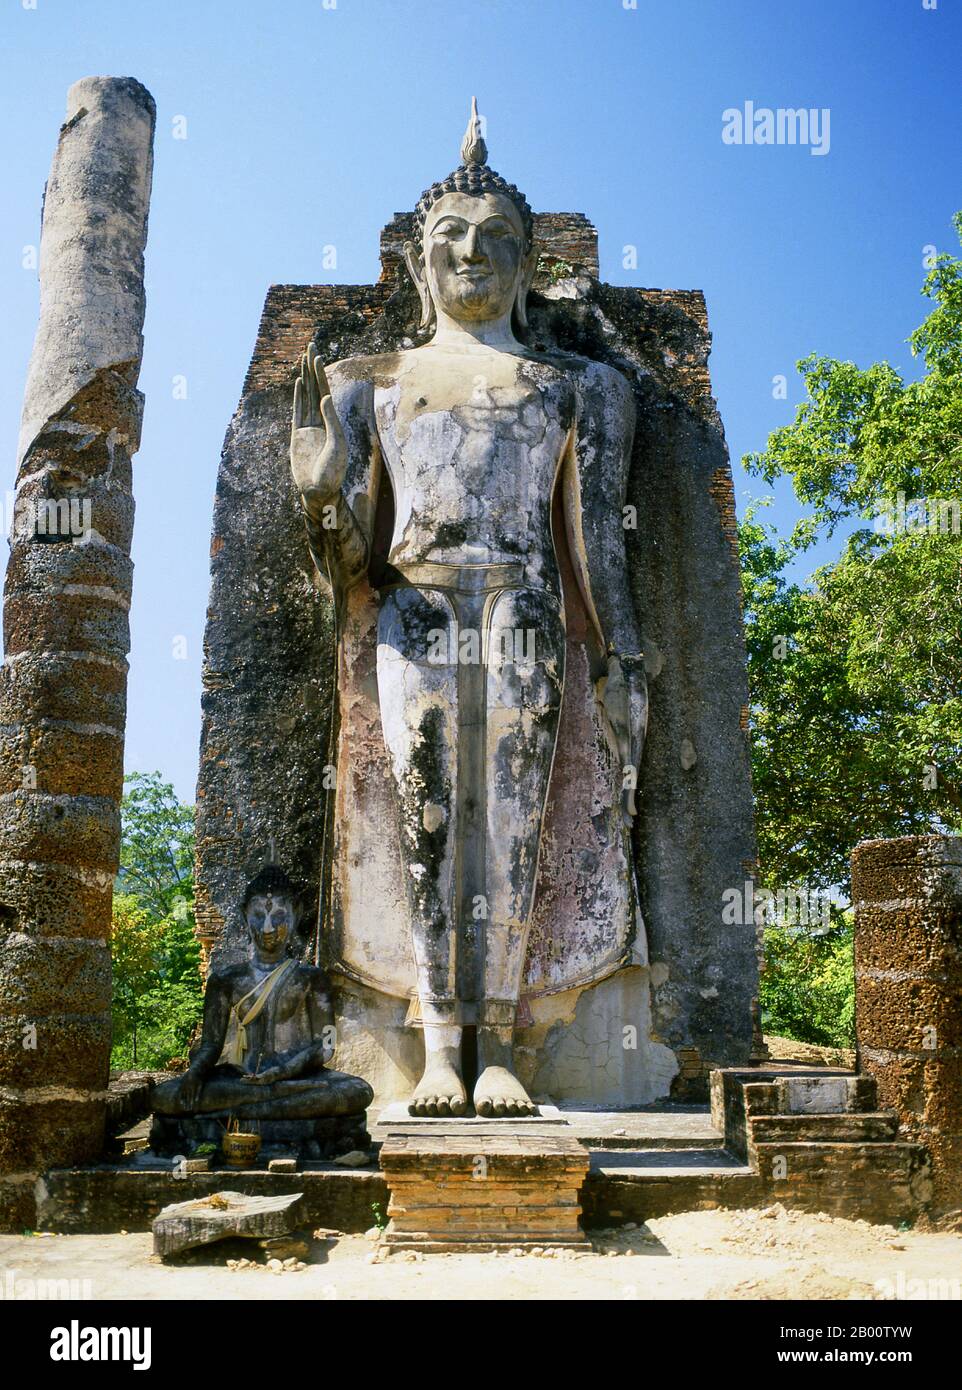 Thailandia: Buddha in piedi, Wat Saphan Hin, Parco storico di Sukhothai. Sukhothai, che letteralmente significa "Alba della felicità", fu la capitale del regno di Sukhothai e fu fondata nel 1238. Fu la capitale dell'Impero Tailandese per circa 140 anni. Foto Stock